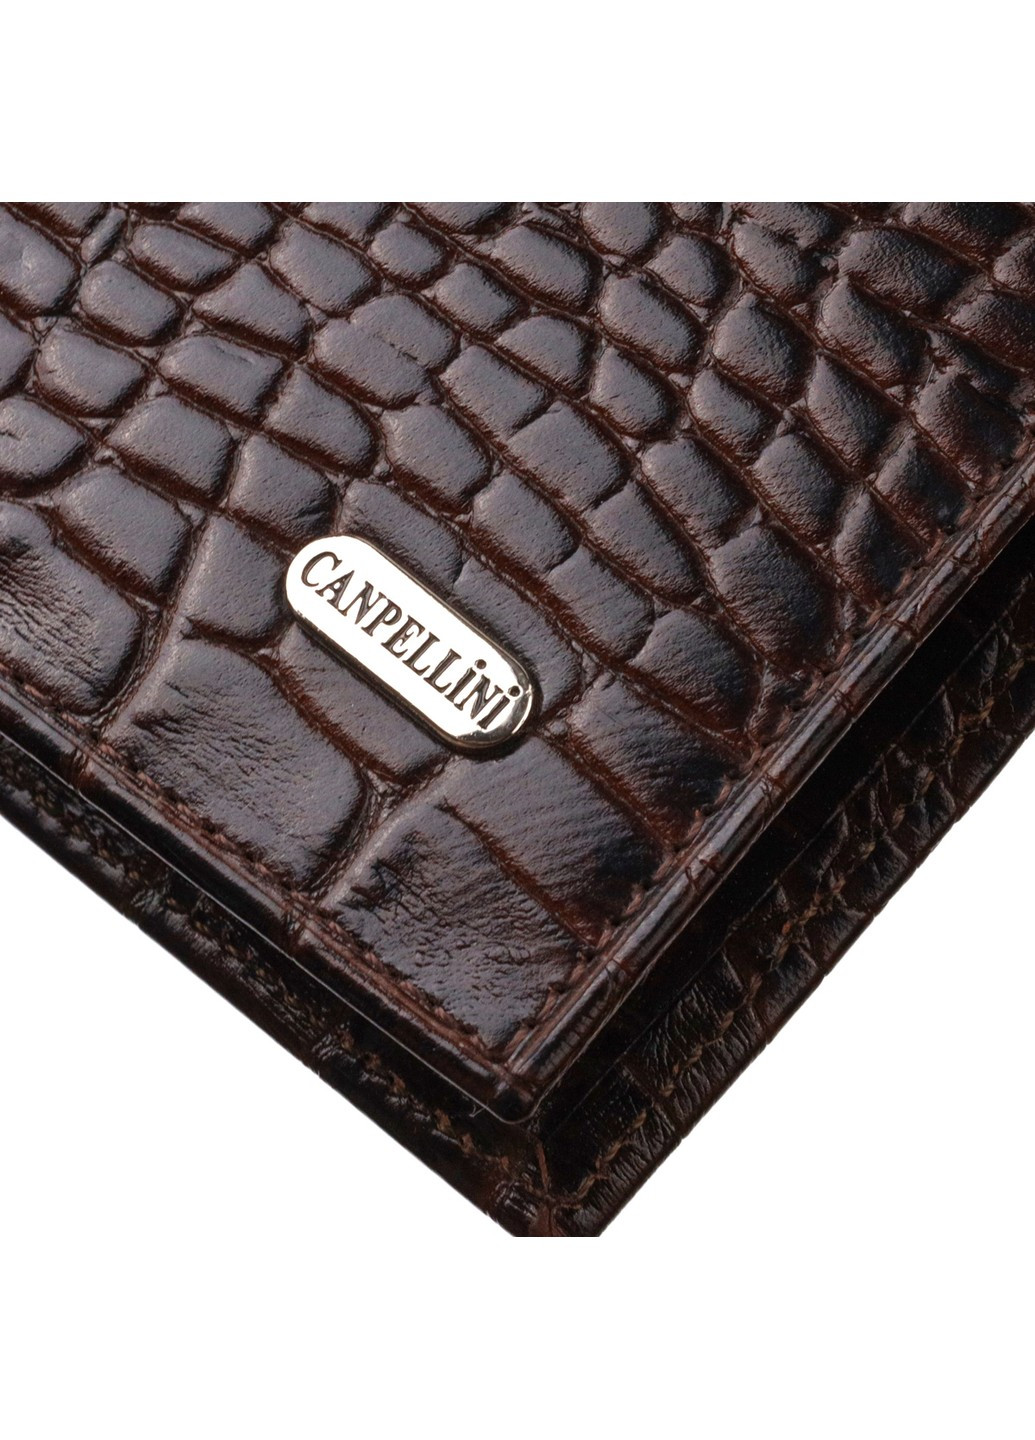 Горизонтальный мужской бумажник среднего размера из натуральной кожи с тиснением под крокодила 21860 Коричневый Canpellini (259874163)